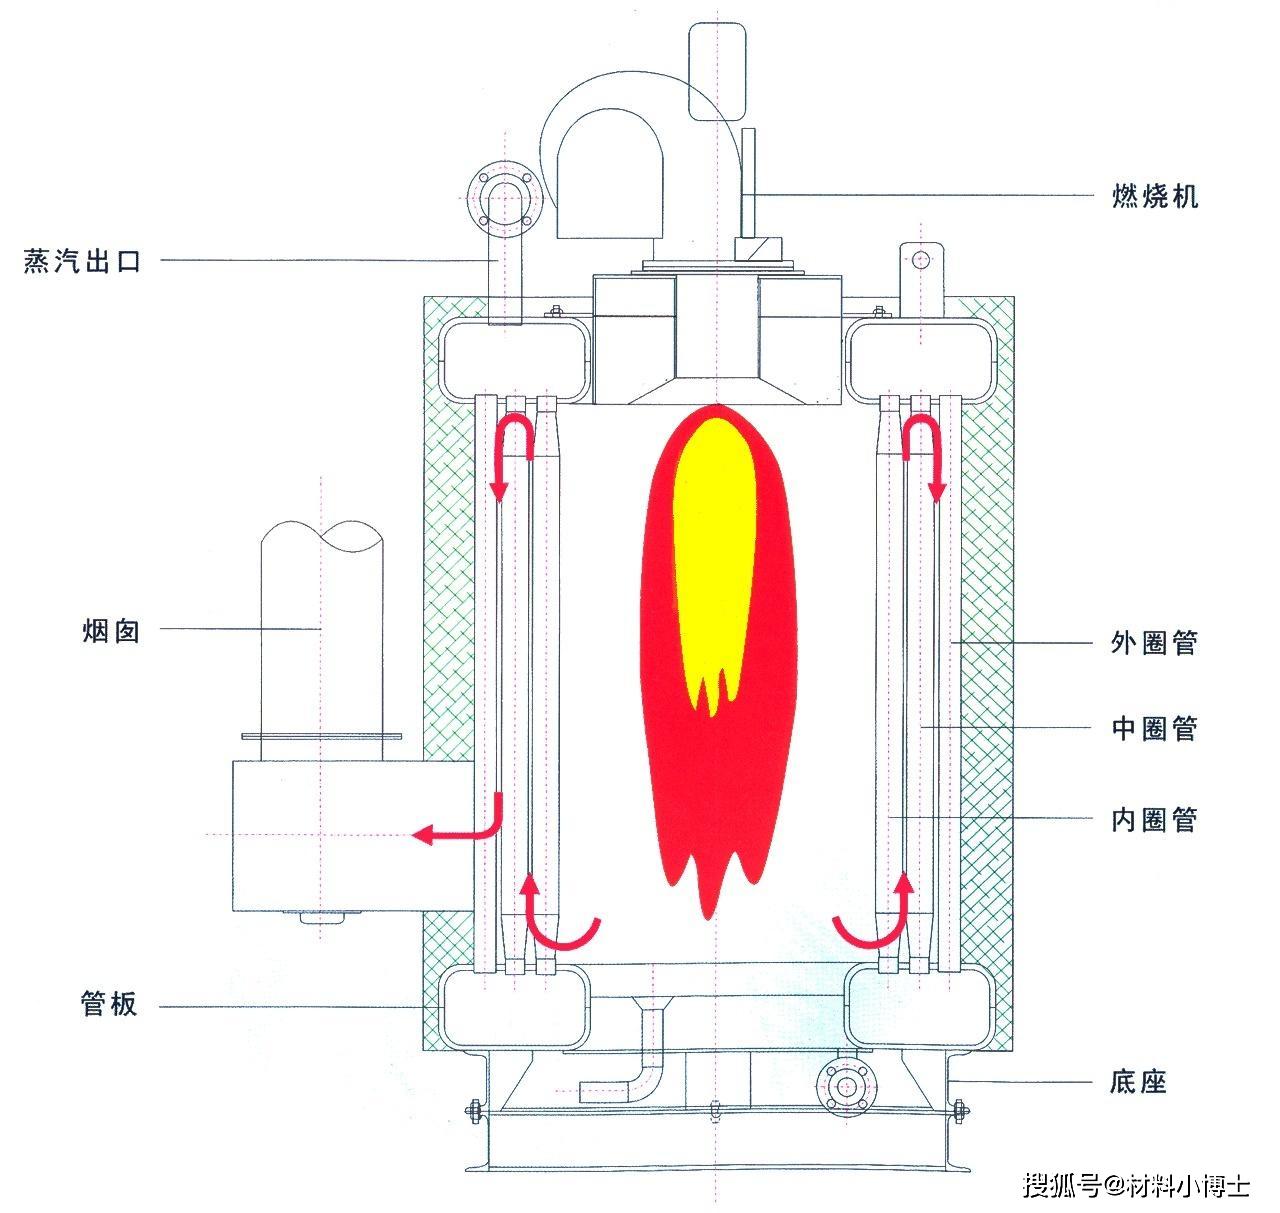 (燃油(燃气)蒸汽锅炉)锅与炉两者进行着能量转换传递过程,放热和吸热